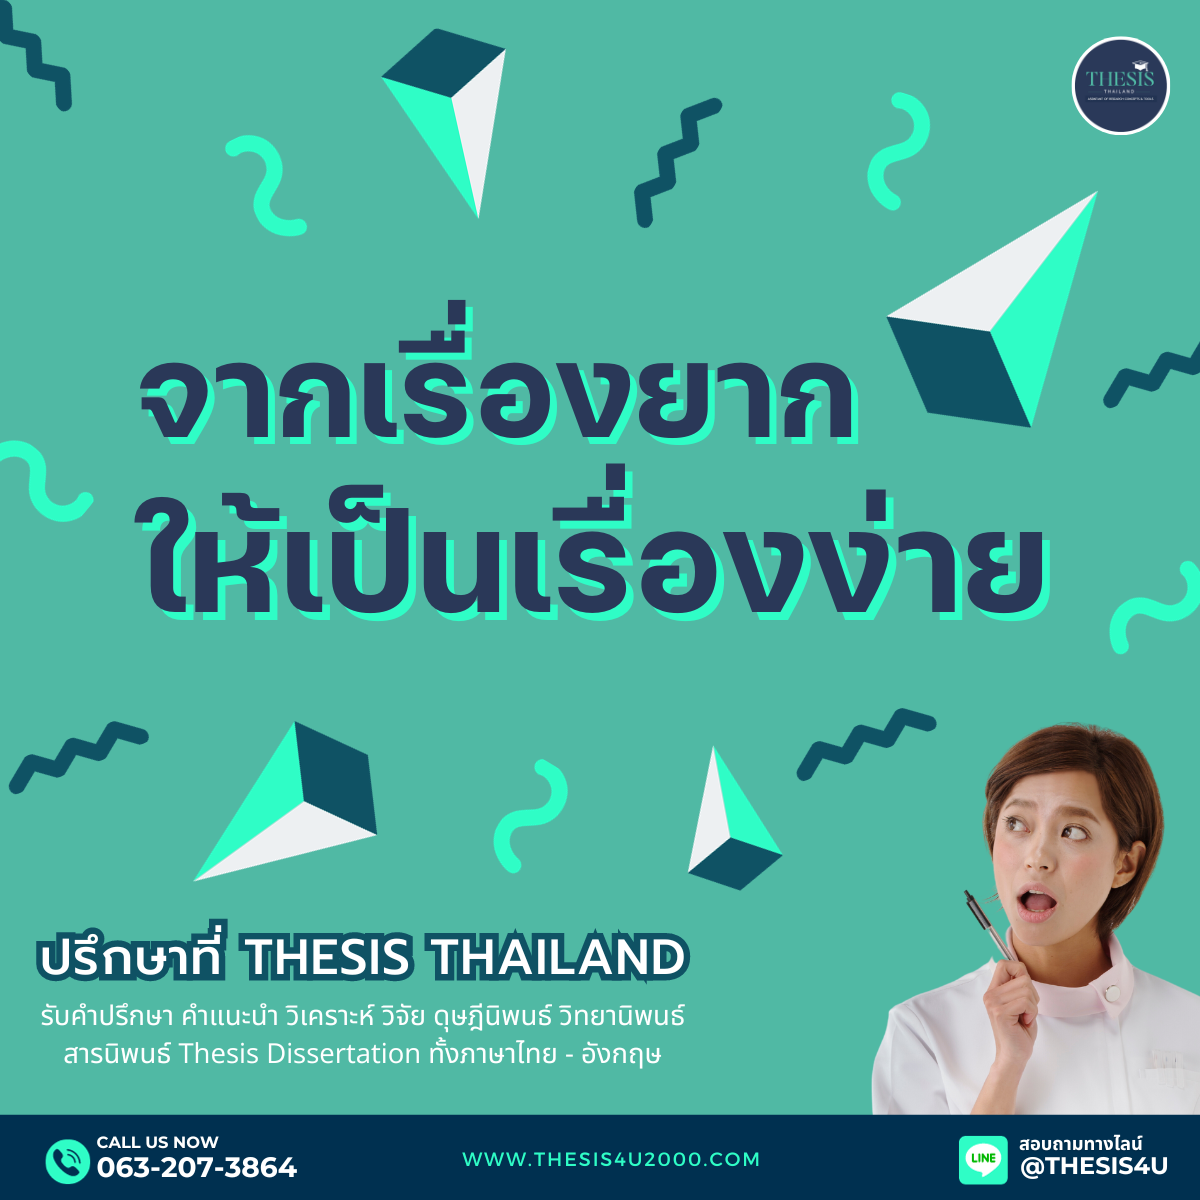 ทำวิจัยจากเรื่องยากให้เป็นเรื่องง่าย ปรึกษาที่ Thesis Thailand